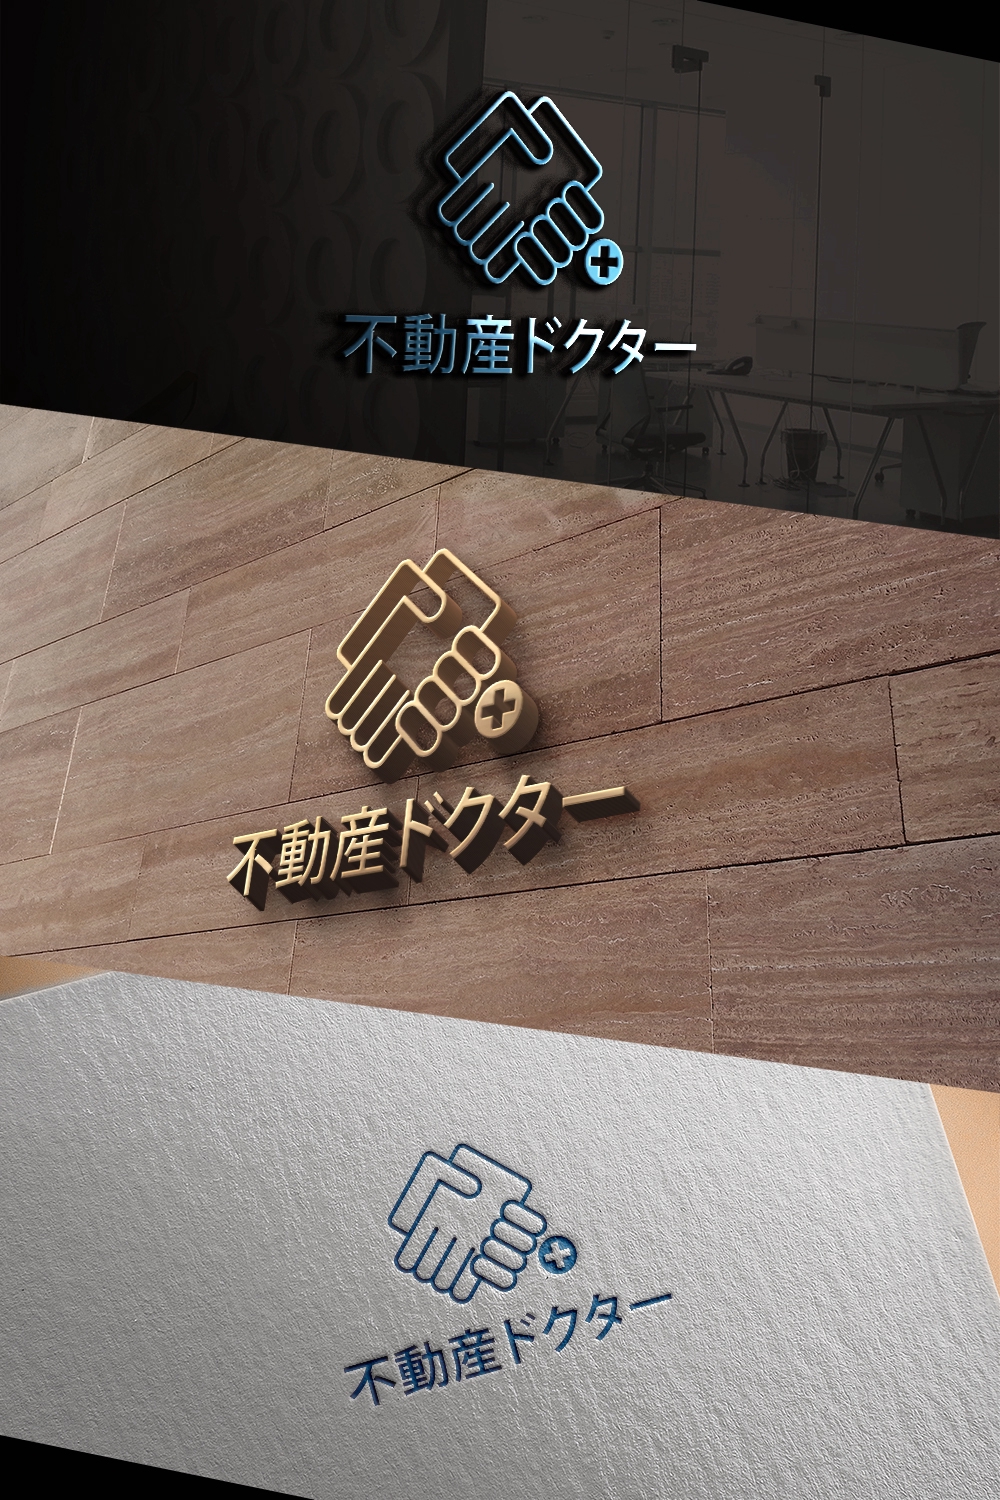 不動産会社の新キャッチコピー「不動産ドクター」のロゴ